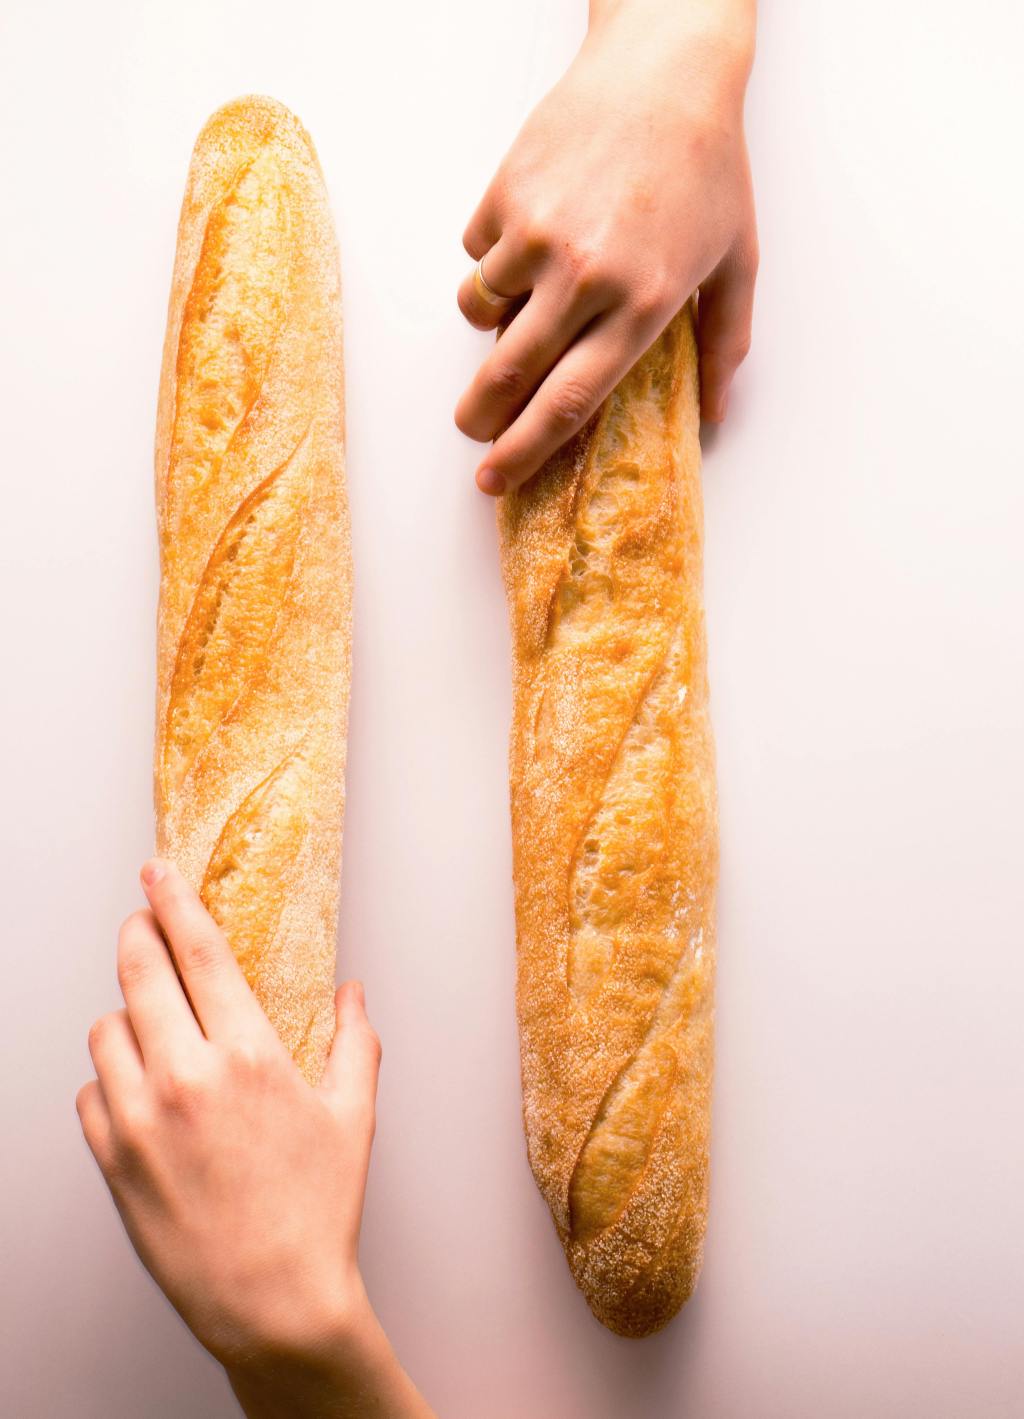 Riti simbolici: il pane ed il sale